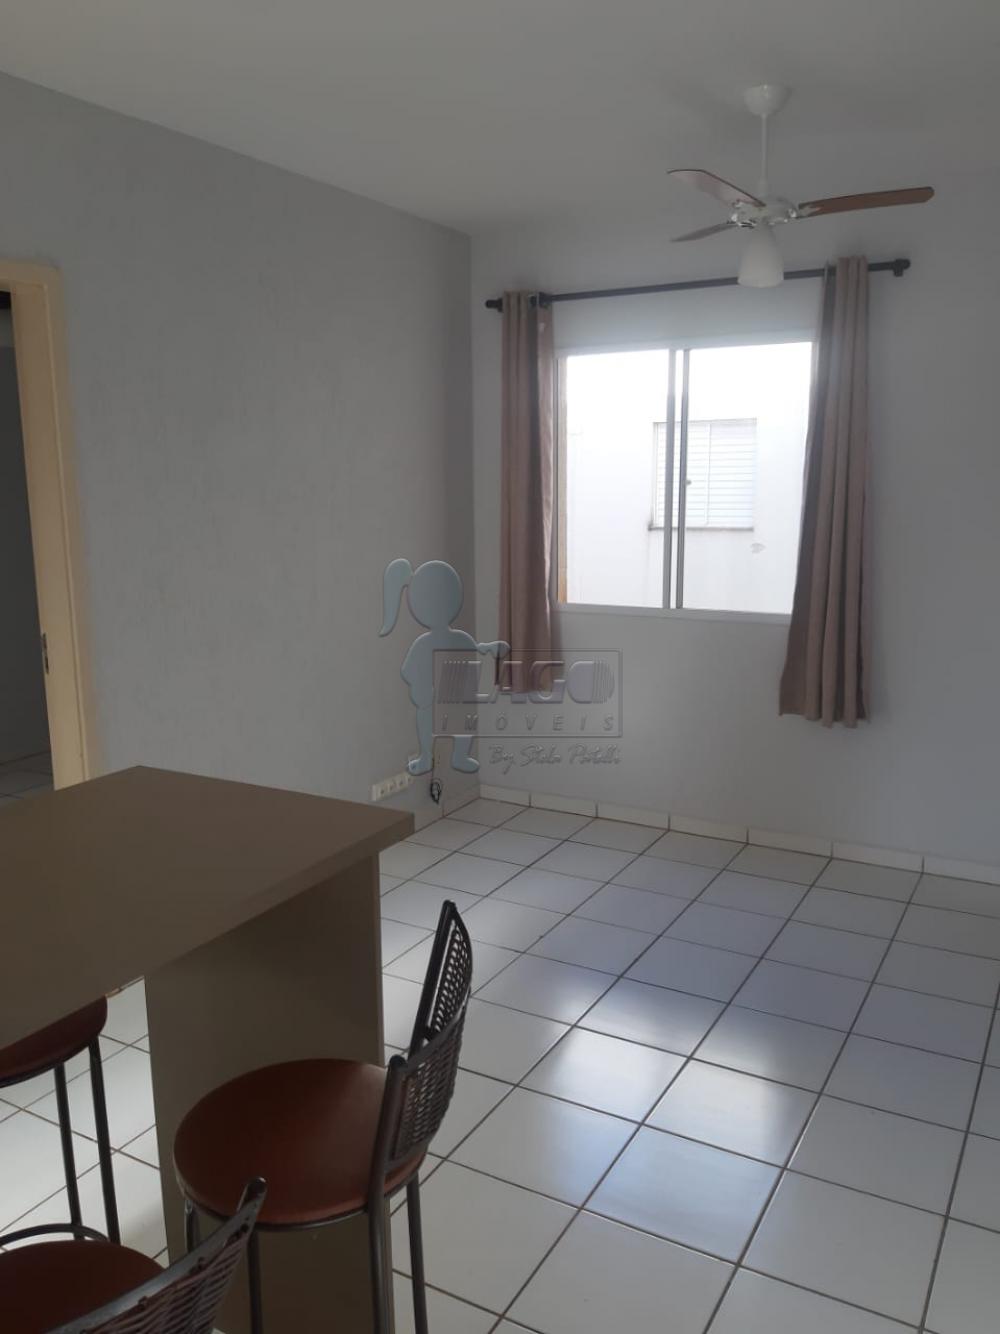 Comprar Apartamento / Padrão em Ribeirão Preto R$ 155.000,00 - Foto 4